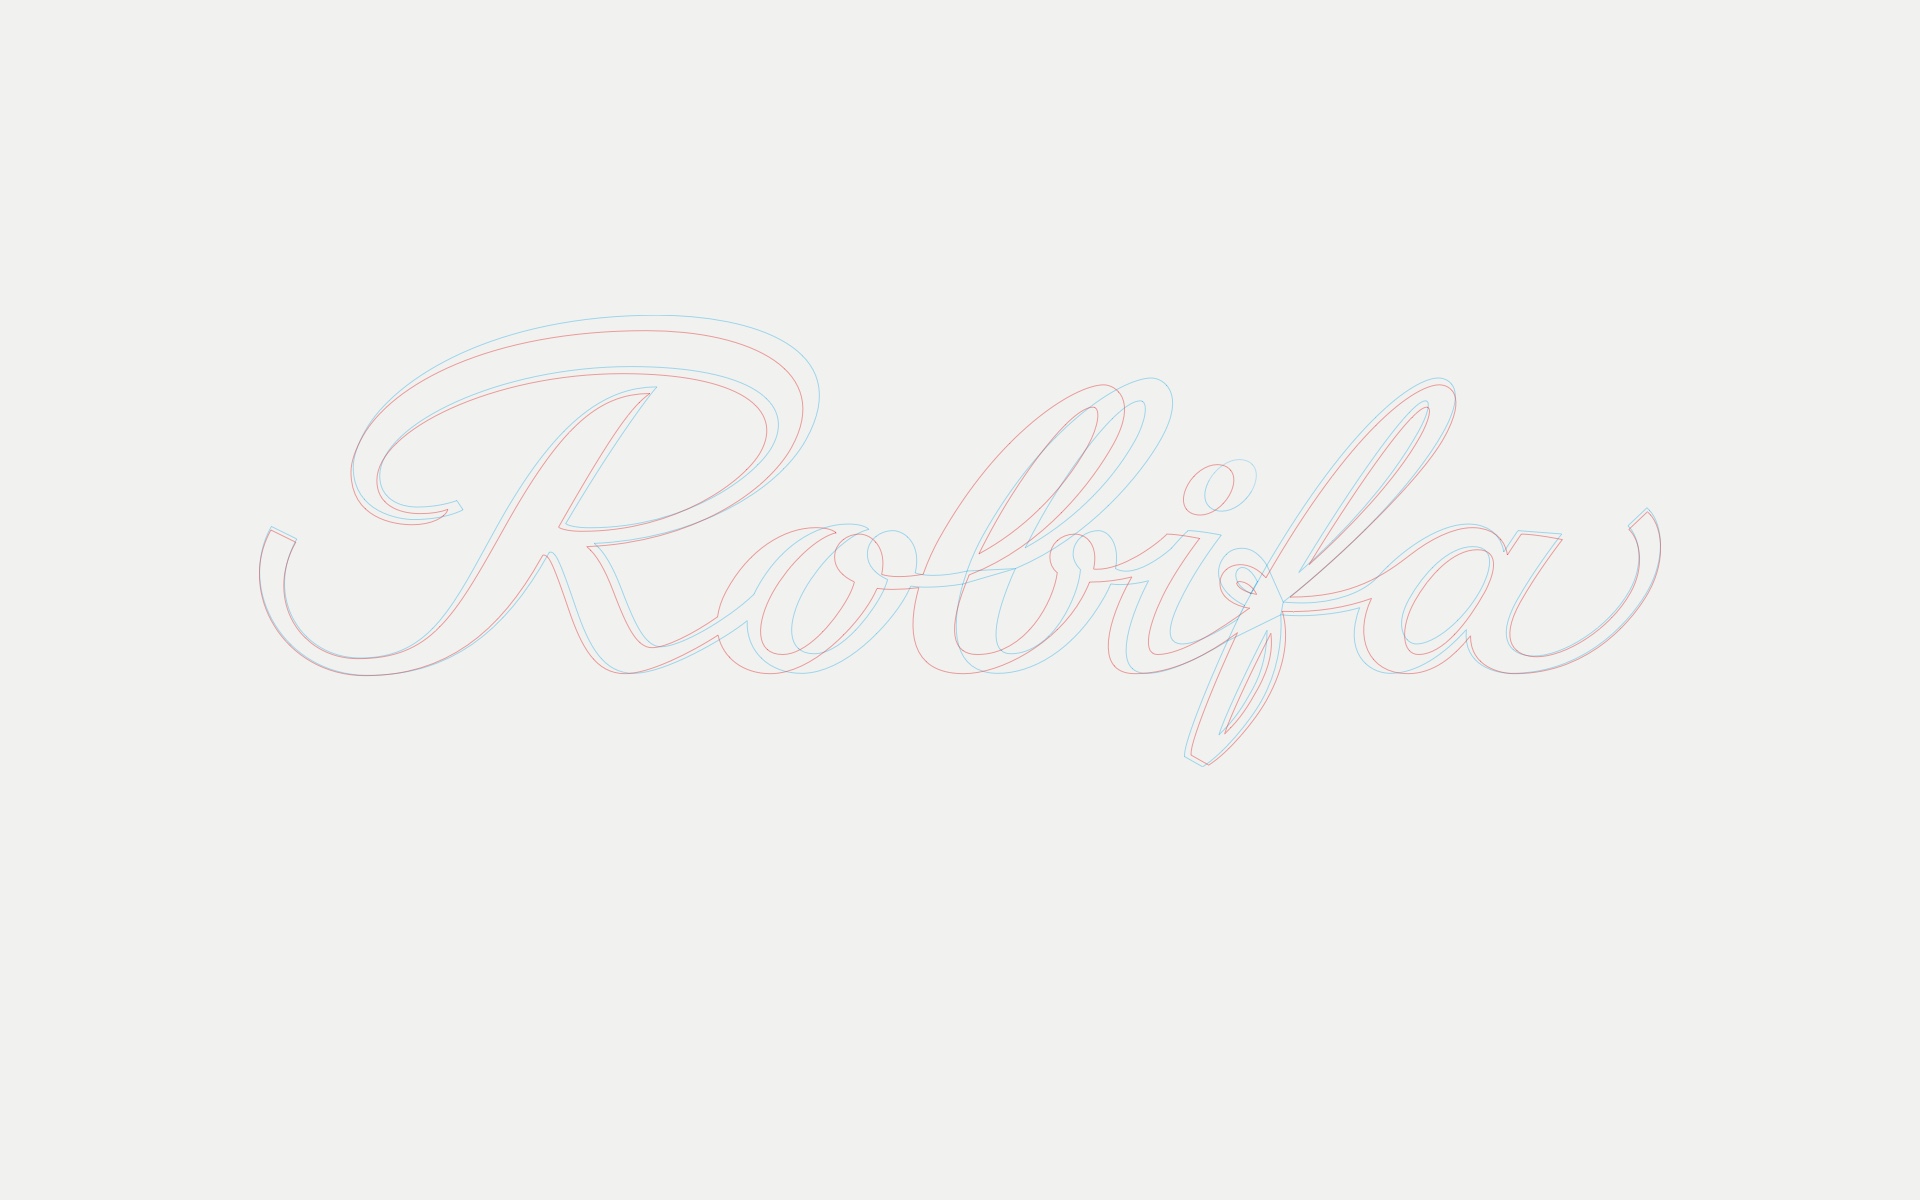 Outlines der alten und neuen Robifa-Wortmarke